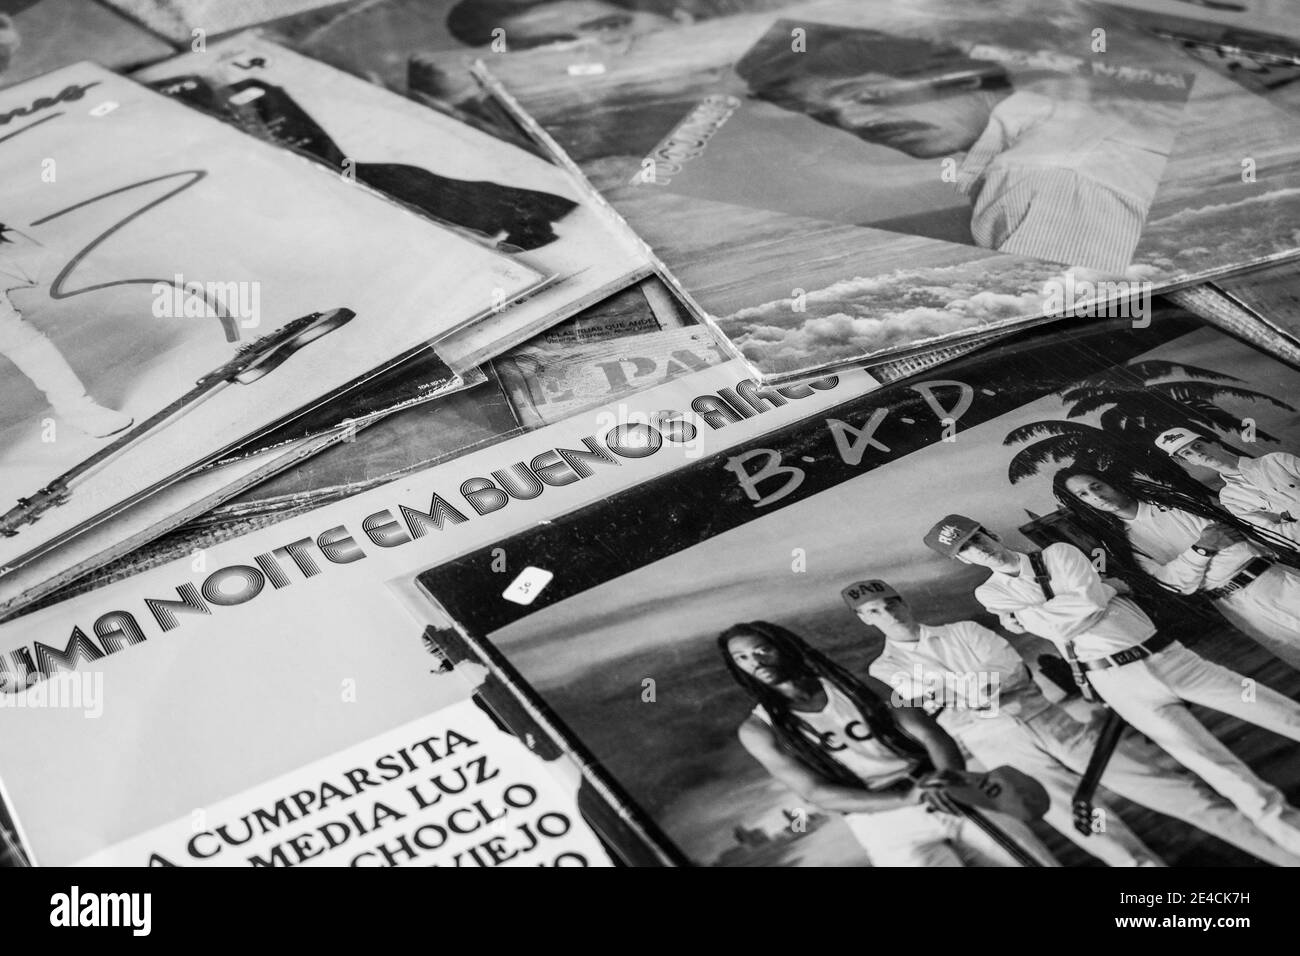 Sao Paulo / SP / Brasile - 12 10 18: Gruppo di dischi multipli in vendita e visualizzati per essere acquistato. La copertina del disco è vecchia scuola, vintage. [B&N] Foto Stock